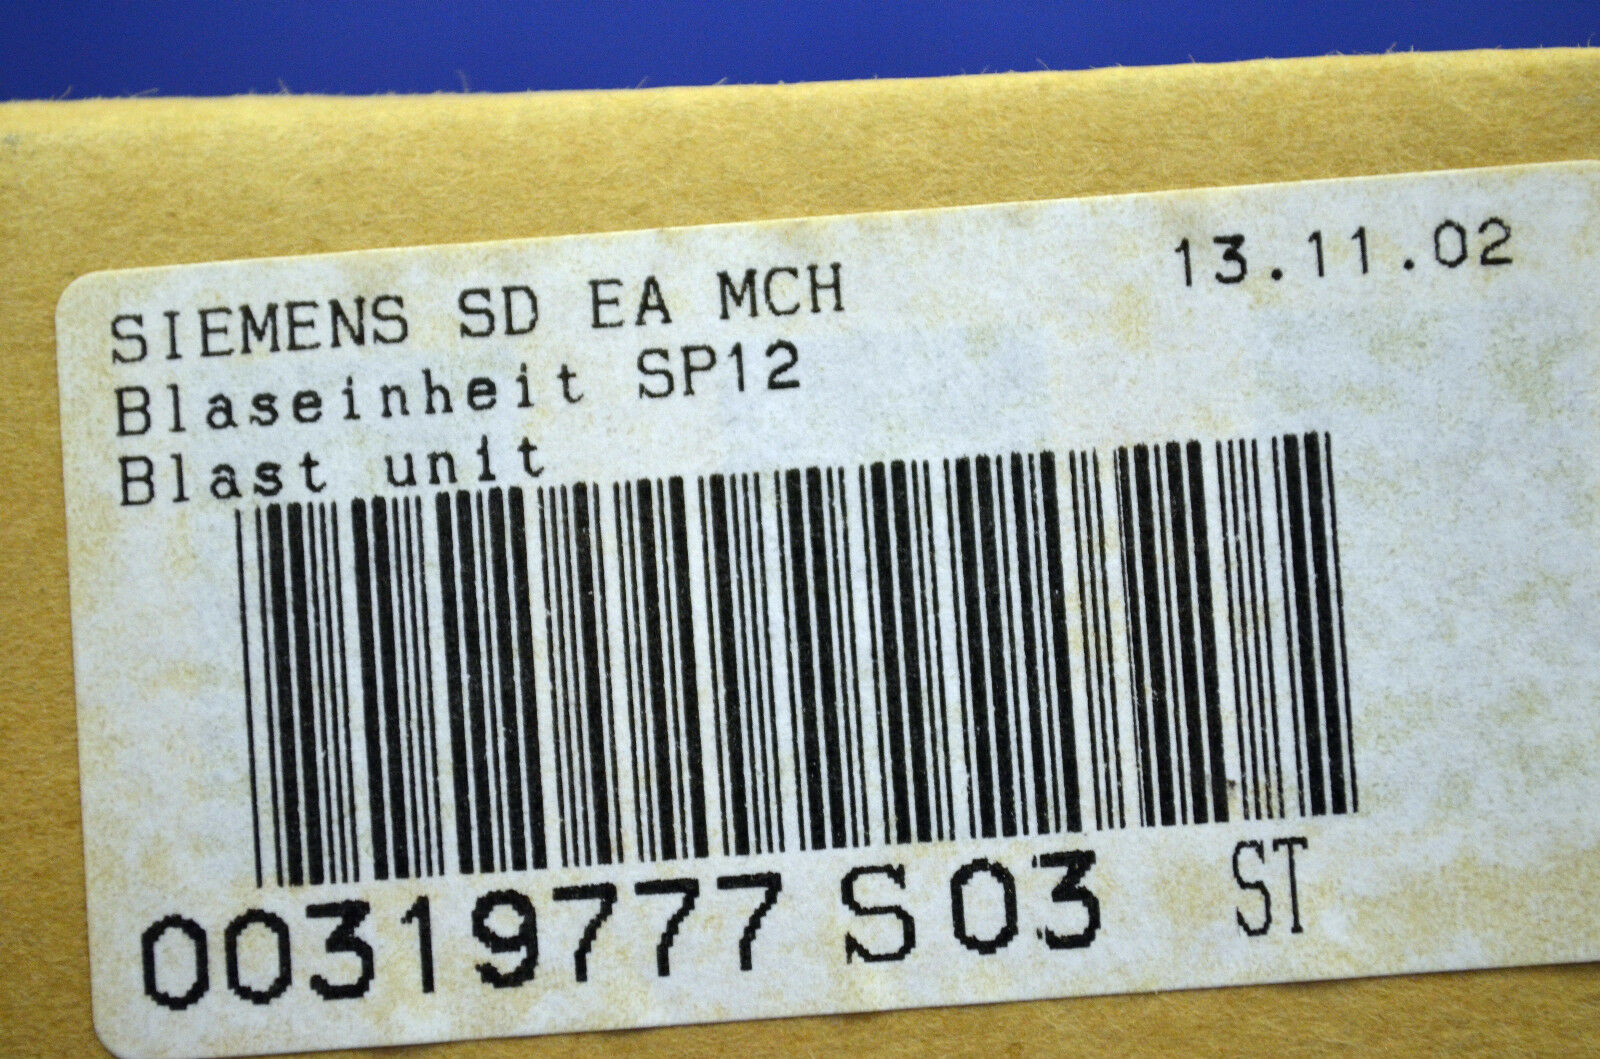 Siemens SD EA MCH 00319777 S 03 BLASEINHEIT SP 12 NEU OVP 